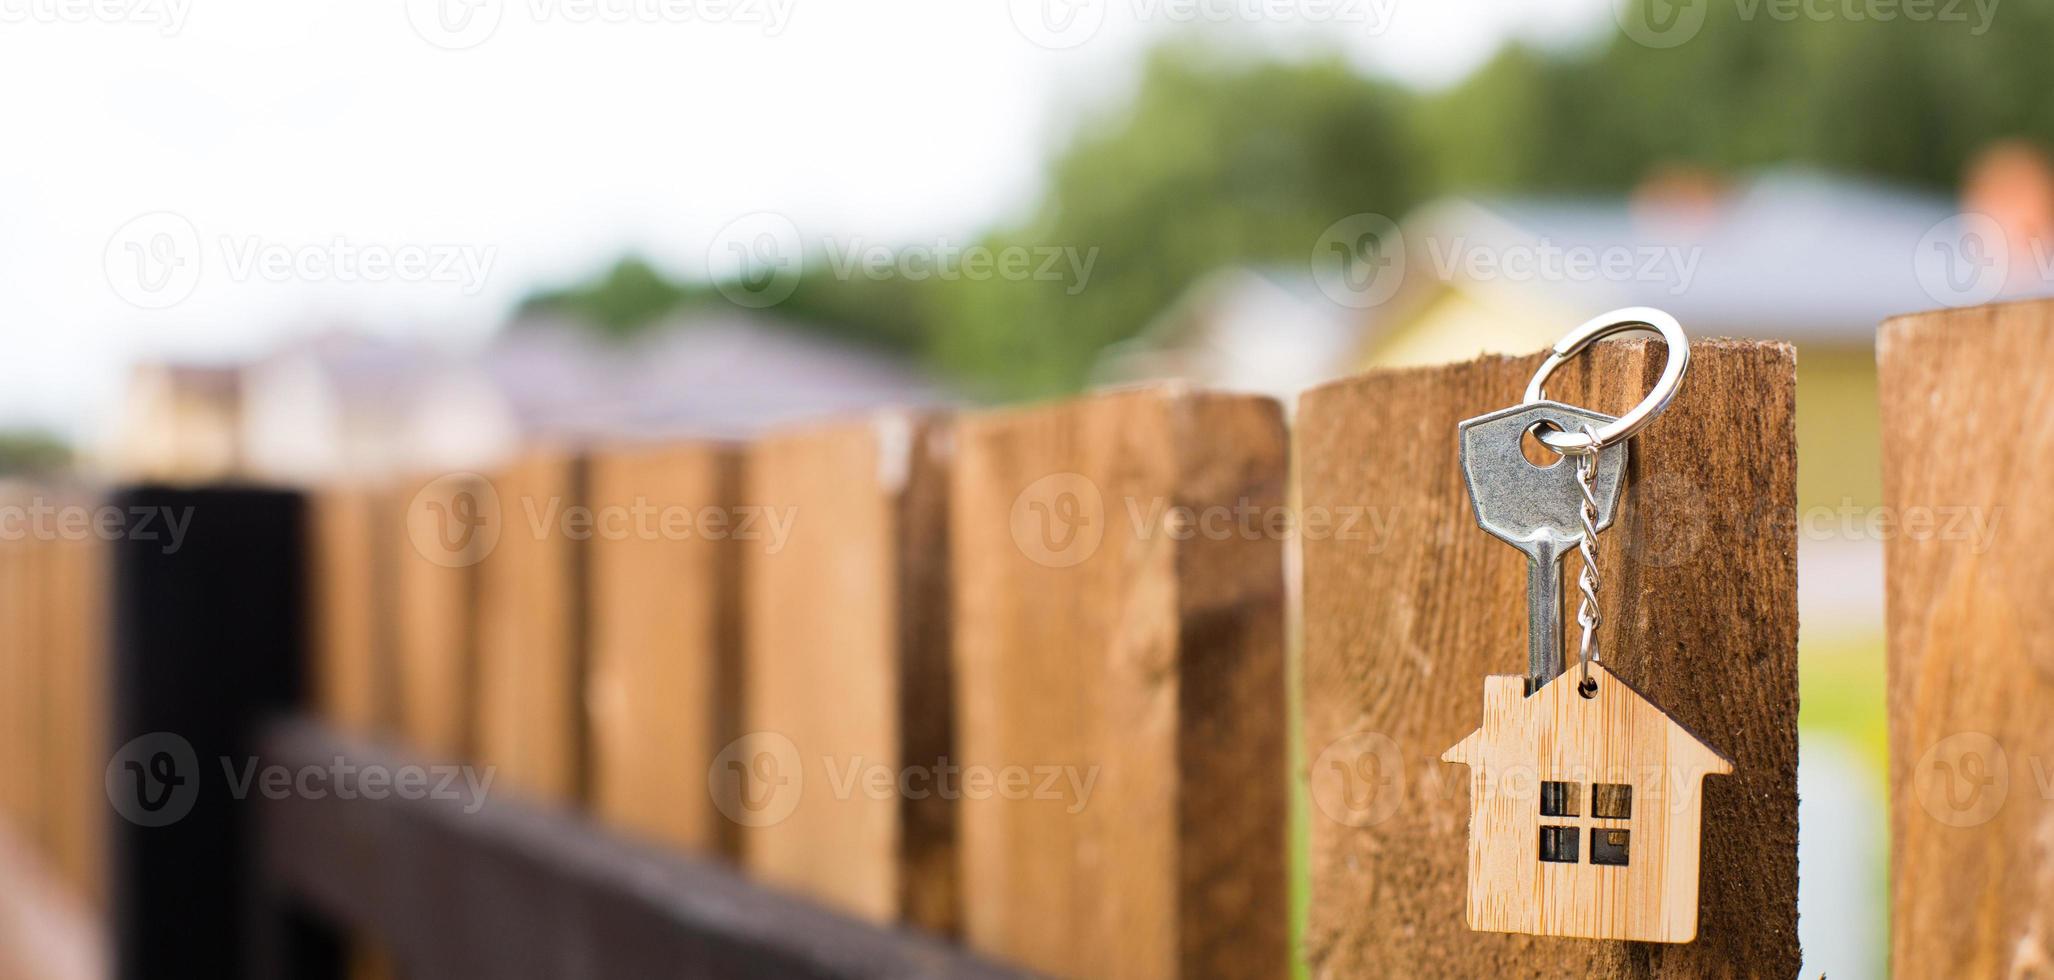 houten hanger van een huis en sleutel. achtergrond van hek en huisje. droom van huis, bouwen, ontwerp, oplevering van het project, verhuizen naar een nieuw huis, hypotheek, huur en aankoop onroerend goed. kopieer ruimte foto